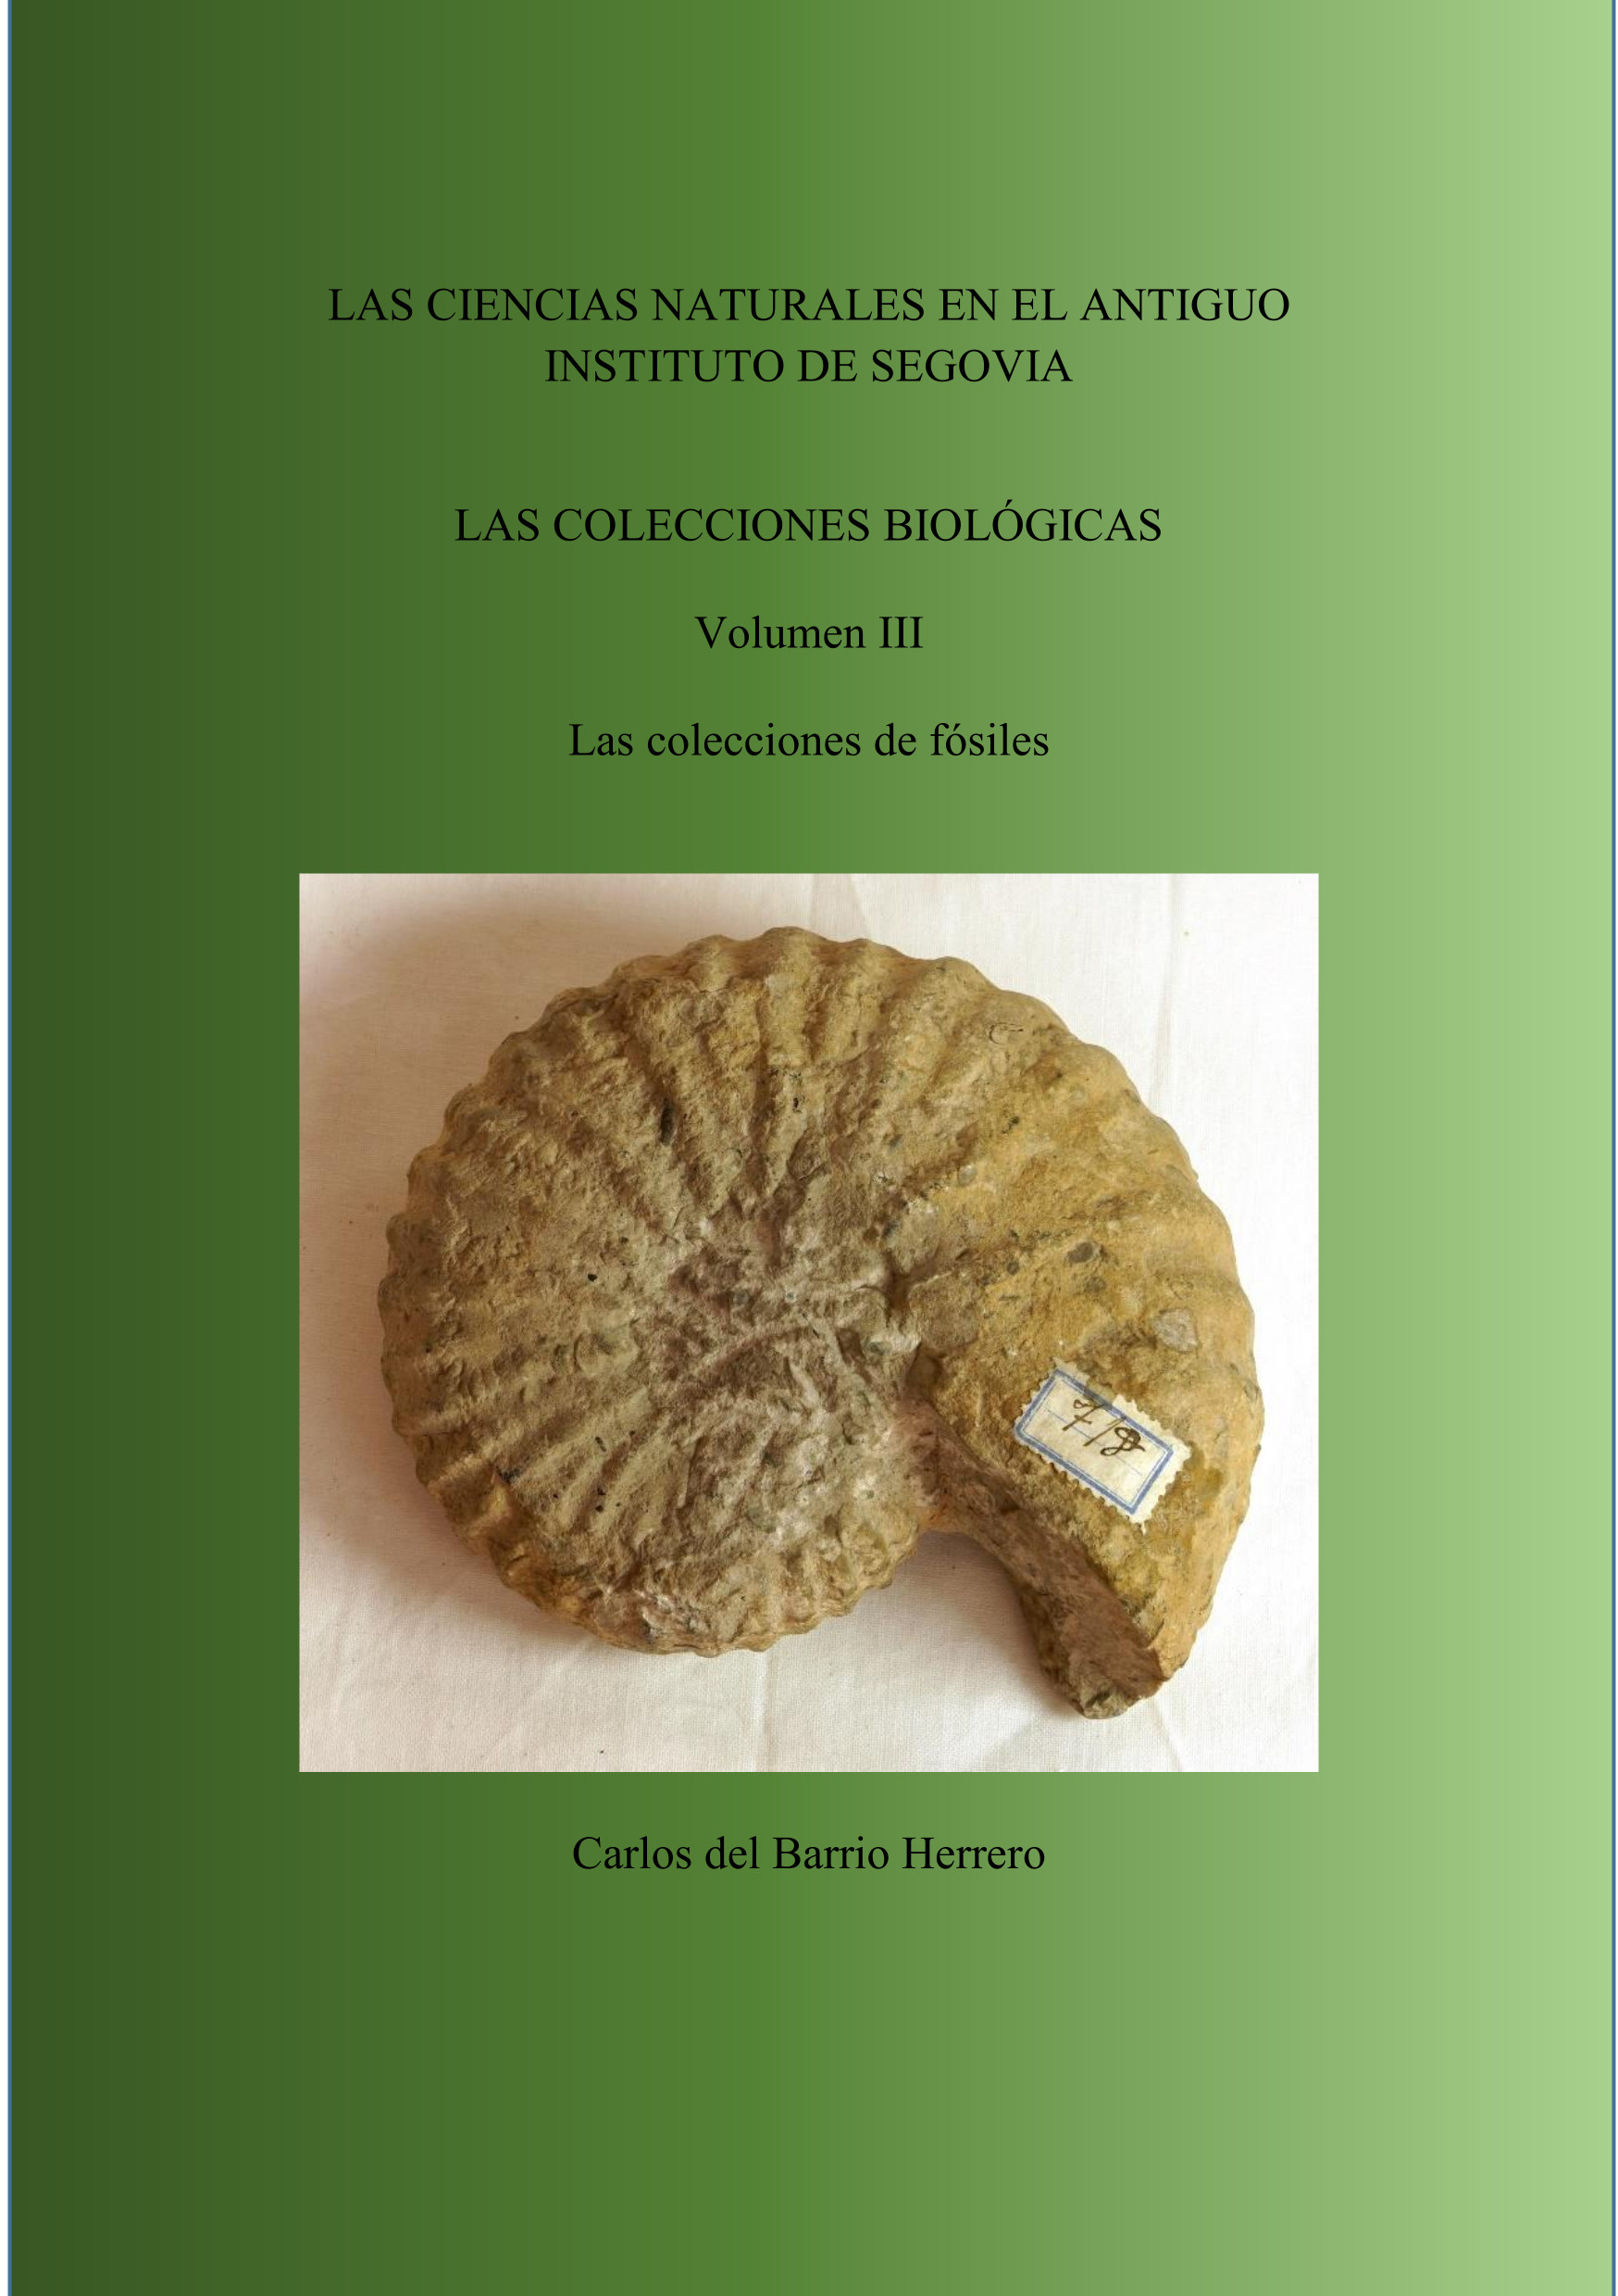 Las Ciencias Naturales en el antiguo Instituto de Segovia. Las colecciones biológicas. III Las colecciones de fósiles 02-2024